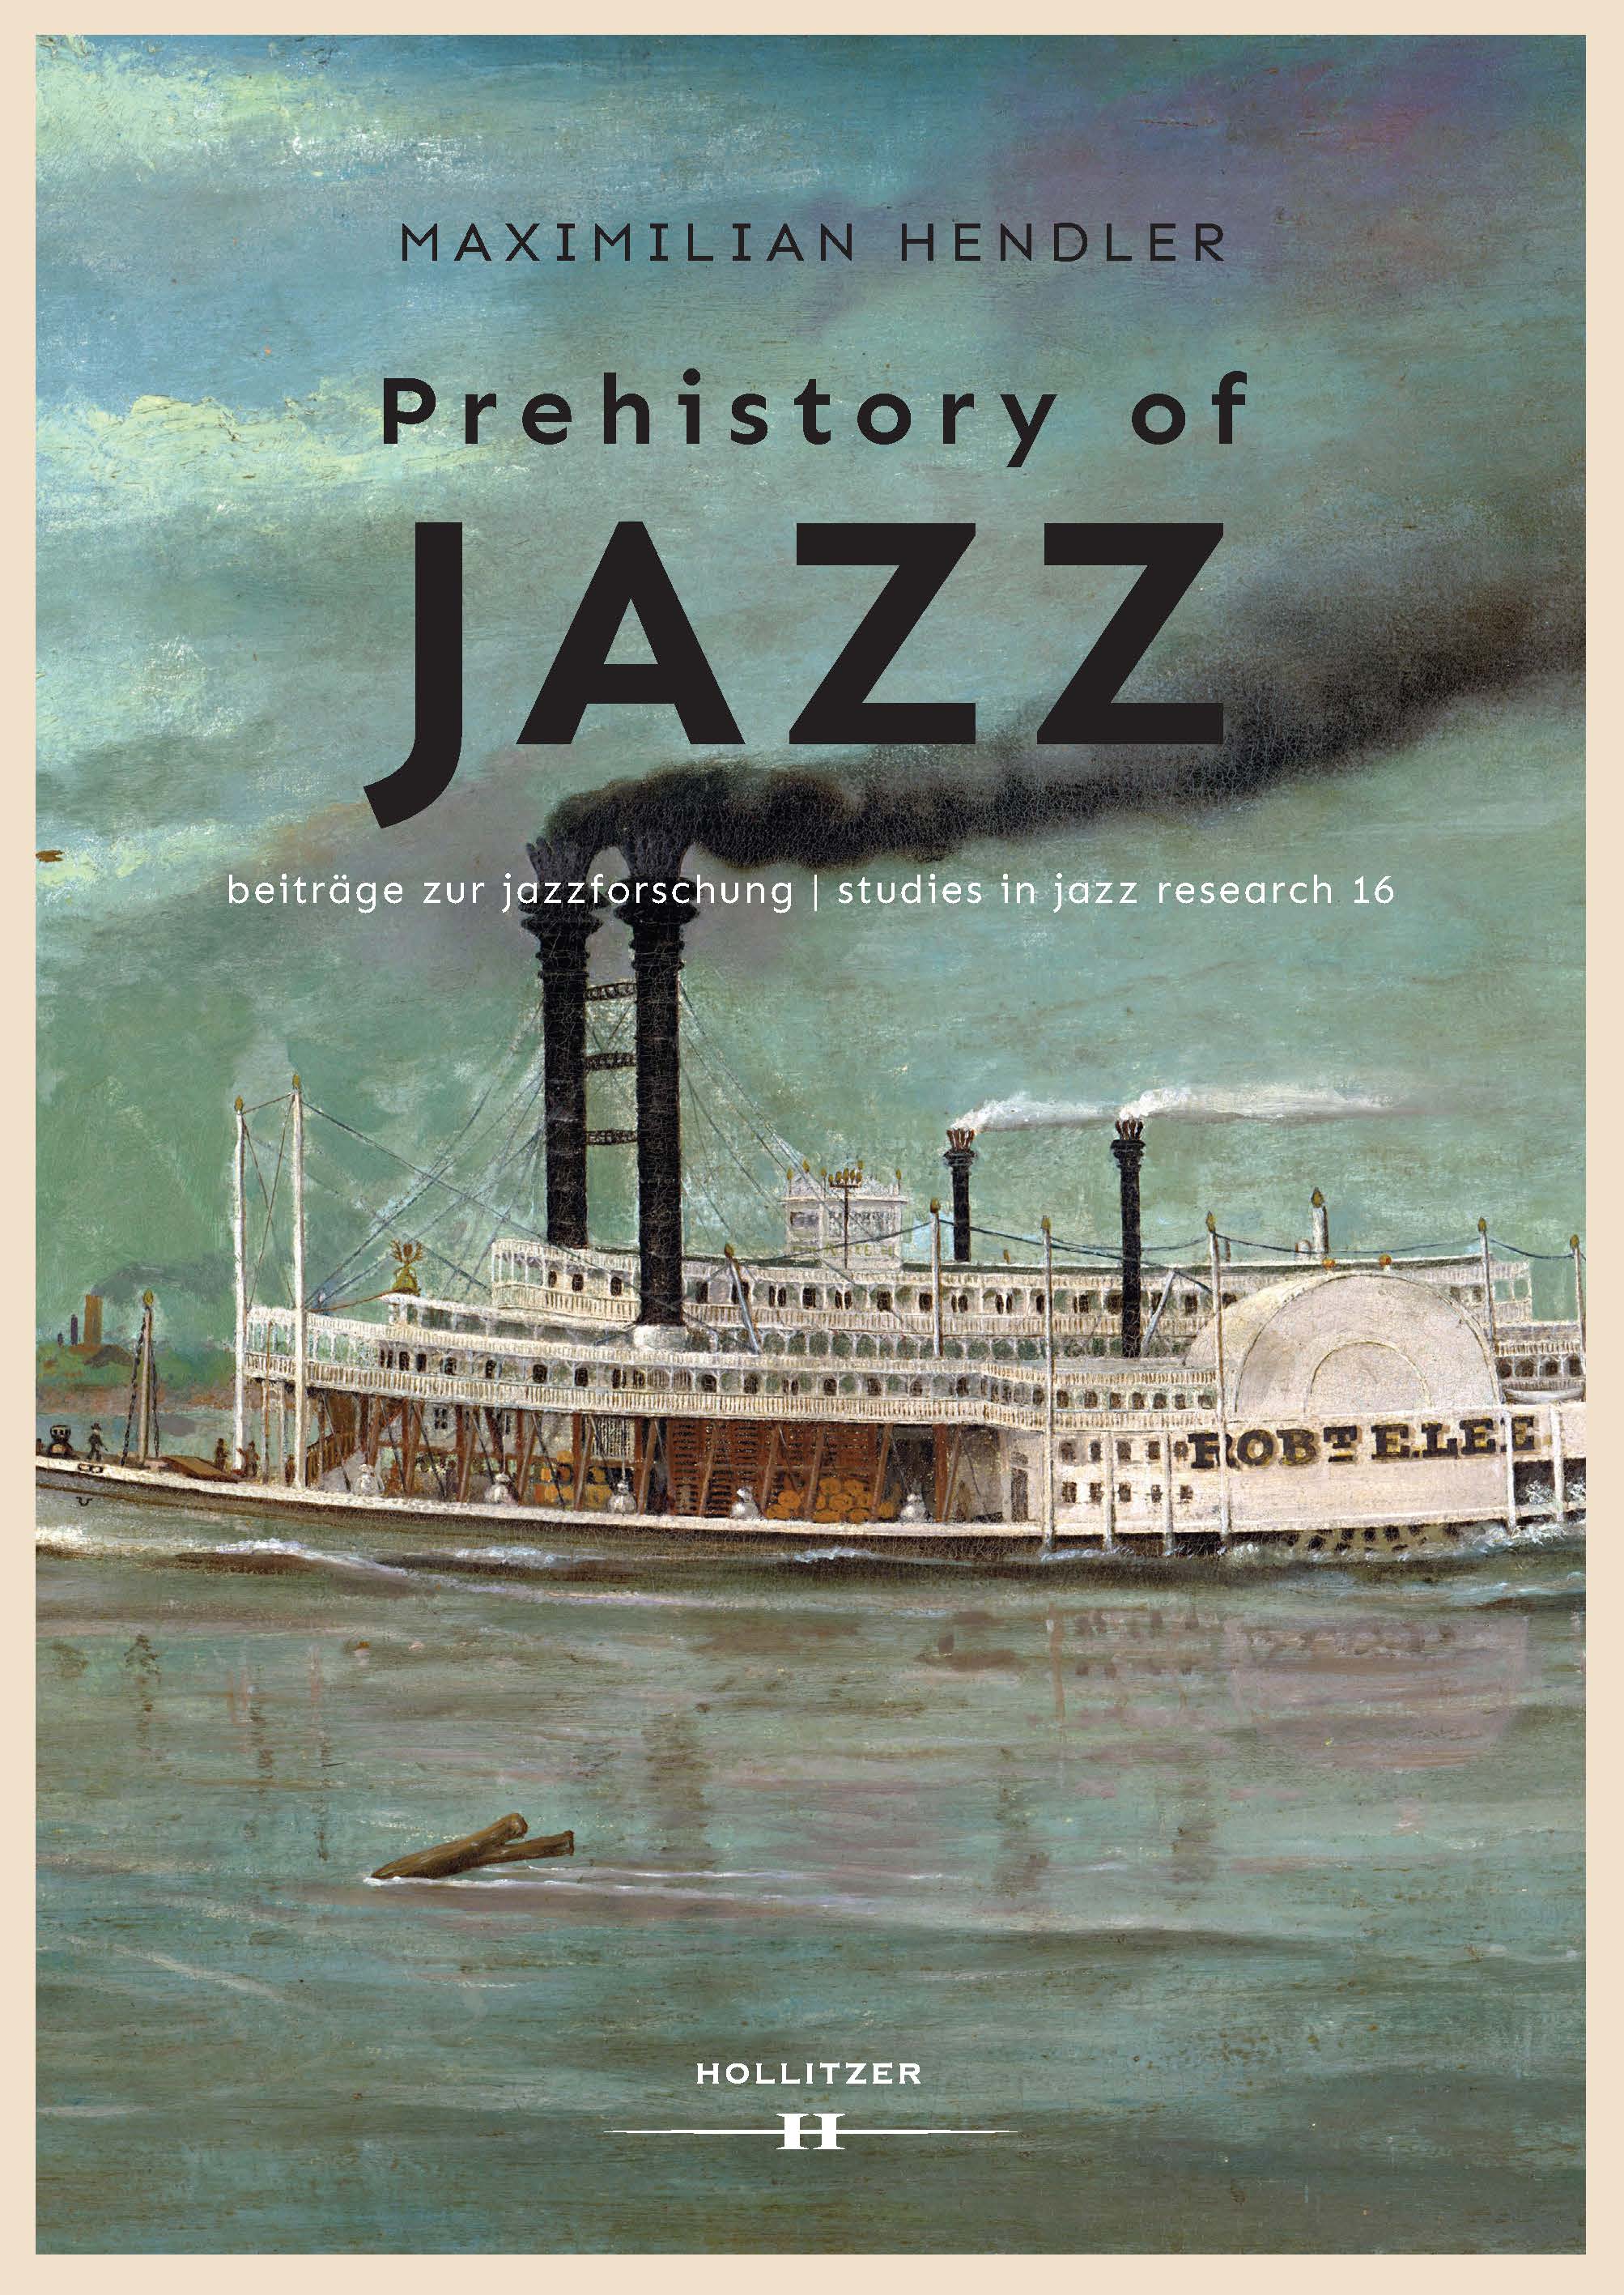 Maximilian Hendler: Prehistory of Jazz